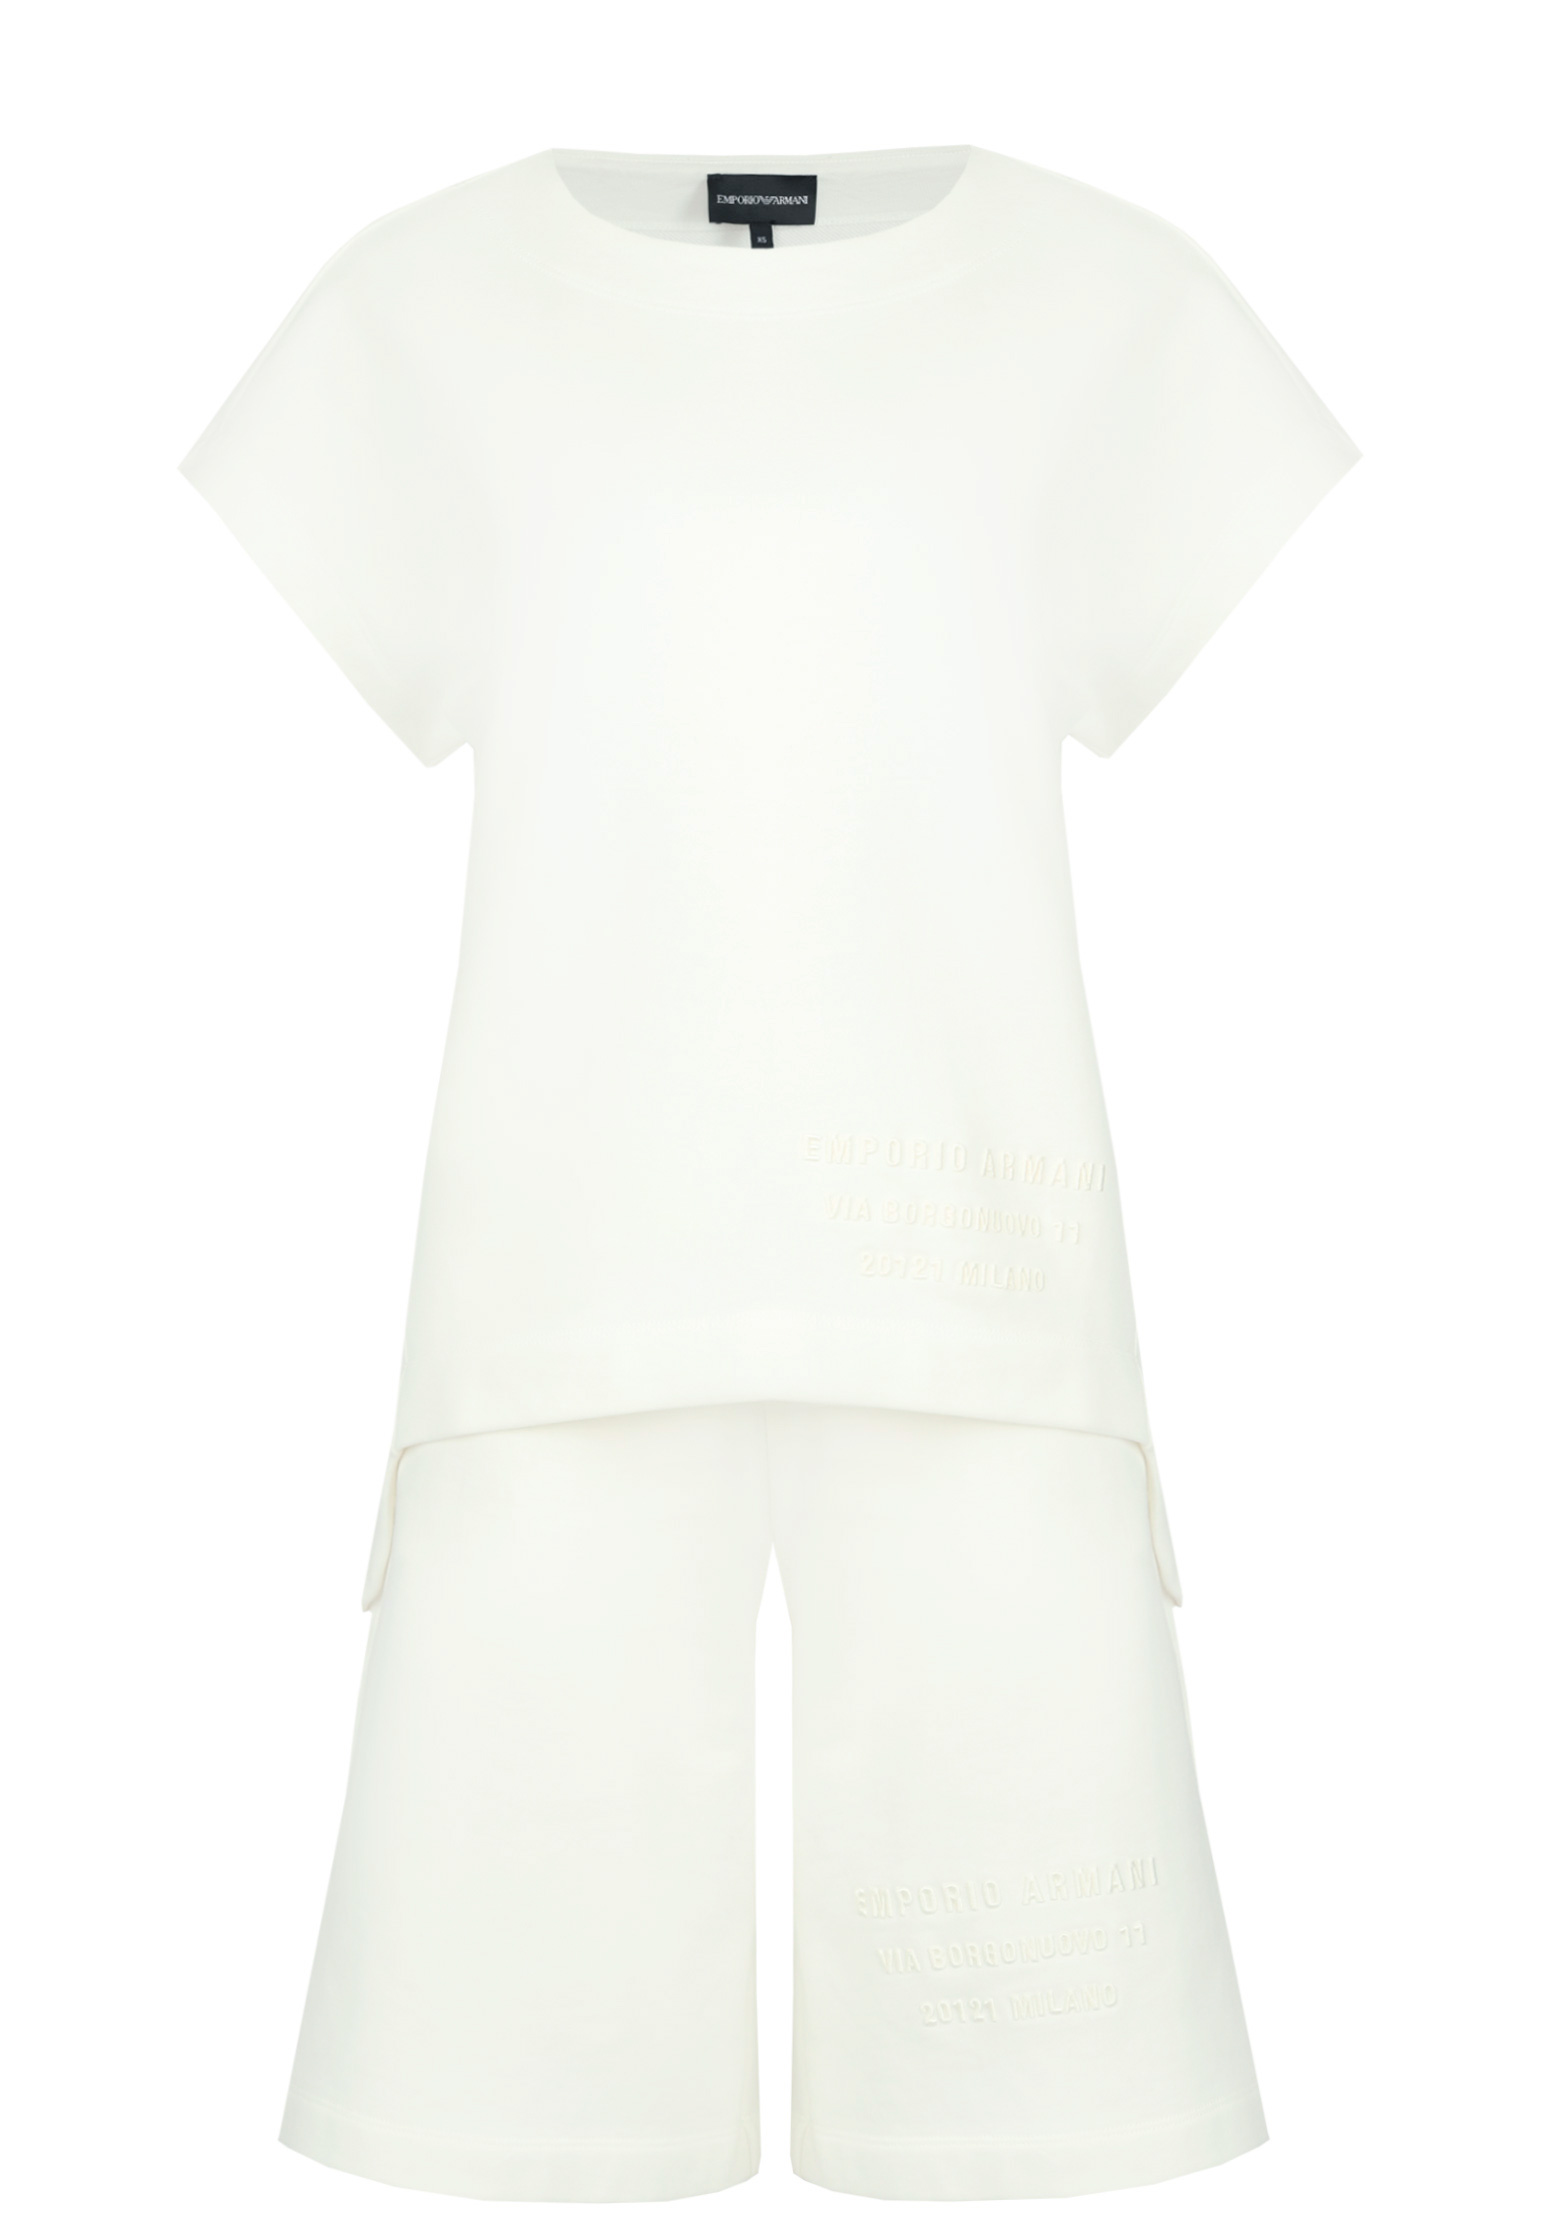 Спортивный костюм EMPORIO ARMANI Белый, размер S 155041 - фото 1